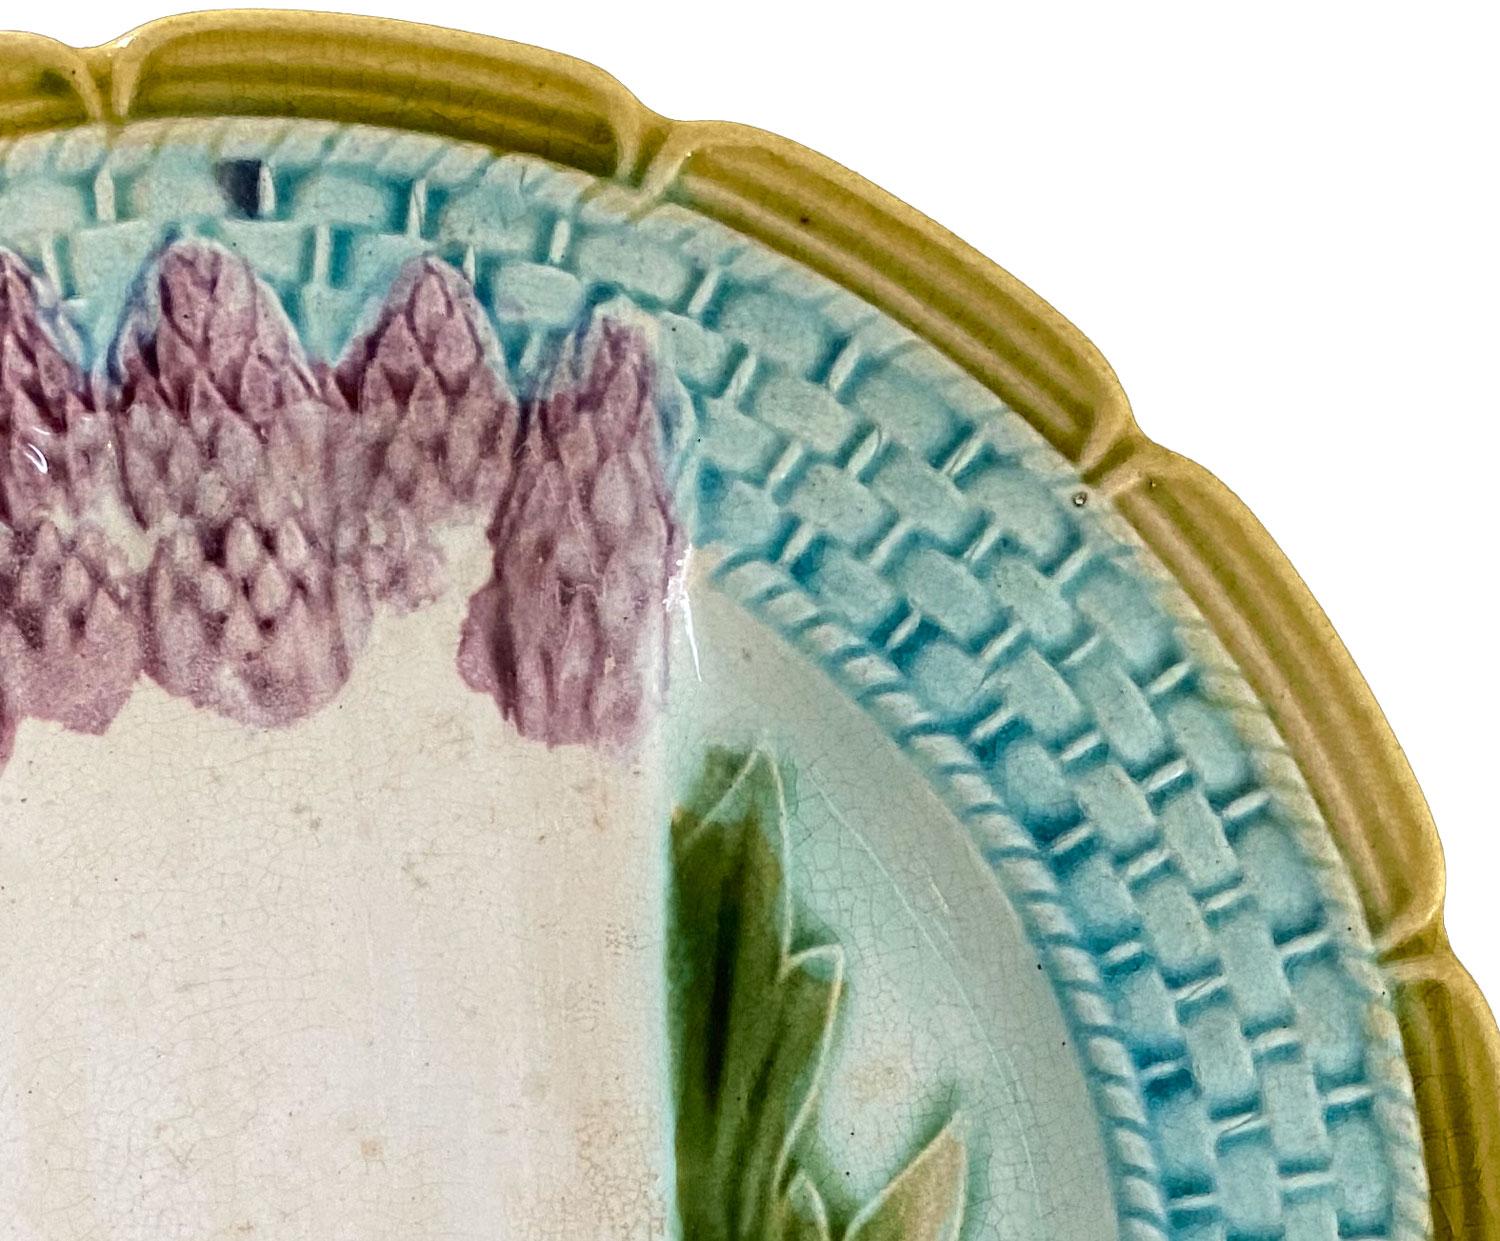 Cette assiette en majolique peinte à la main en forme d'asperge a été fabriquée en France au XIXe siècle. Assiette à asperges en Barbotine - barbotine décorée d'asperges colorées dans la partie centrale, d'une texture en osier sur la lèvre et d'un